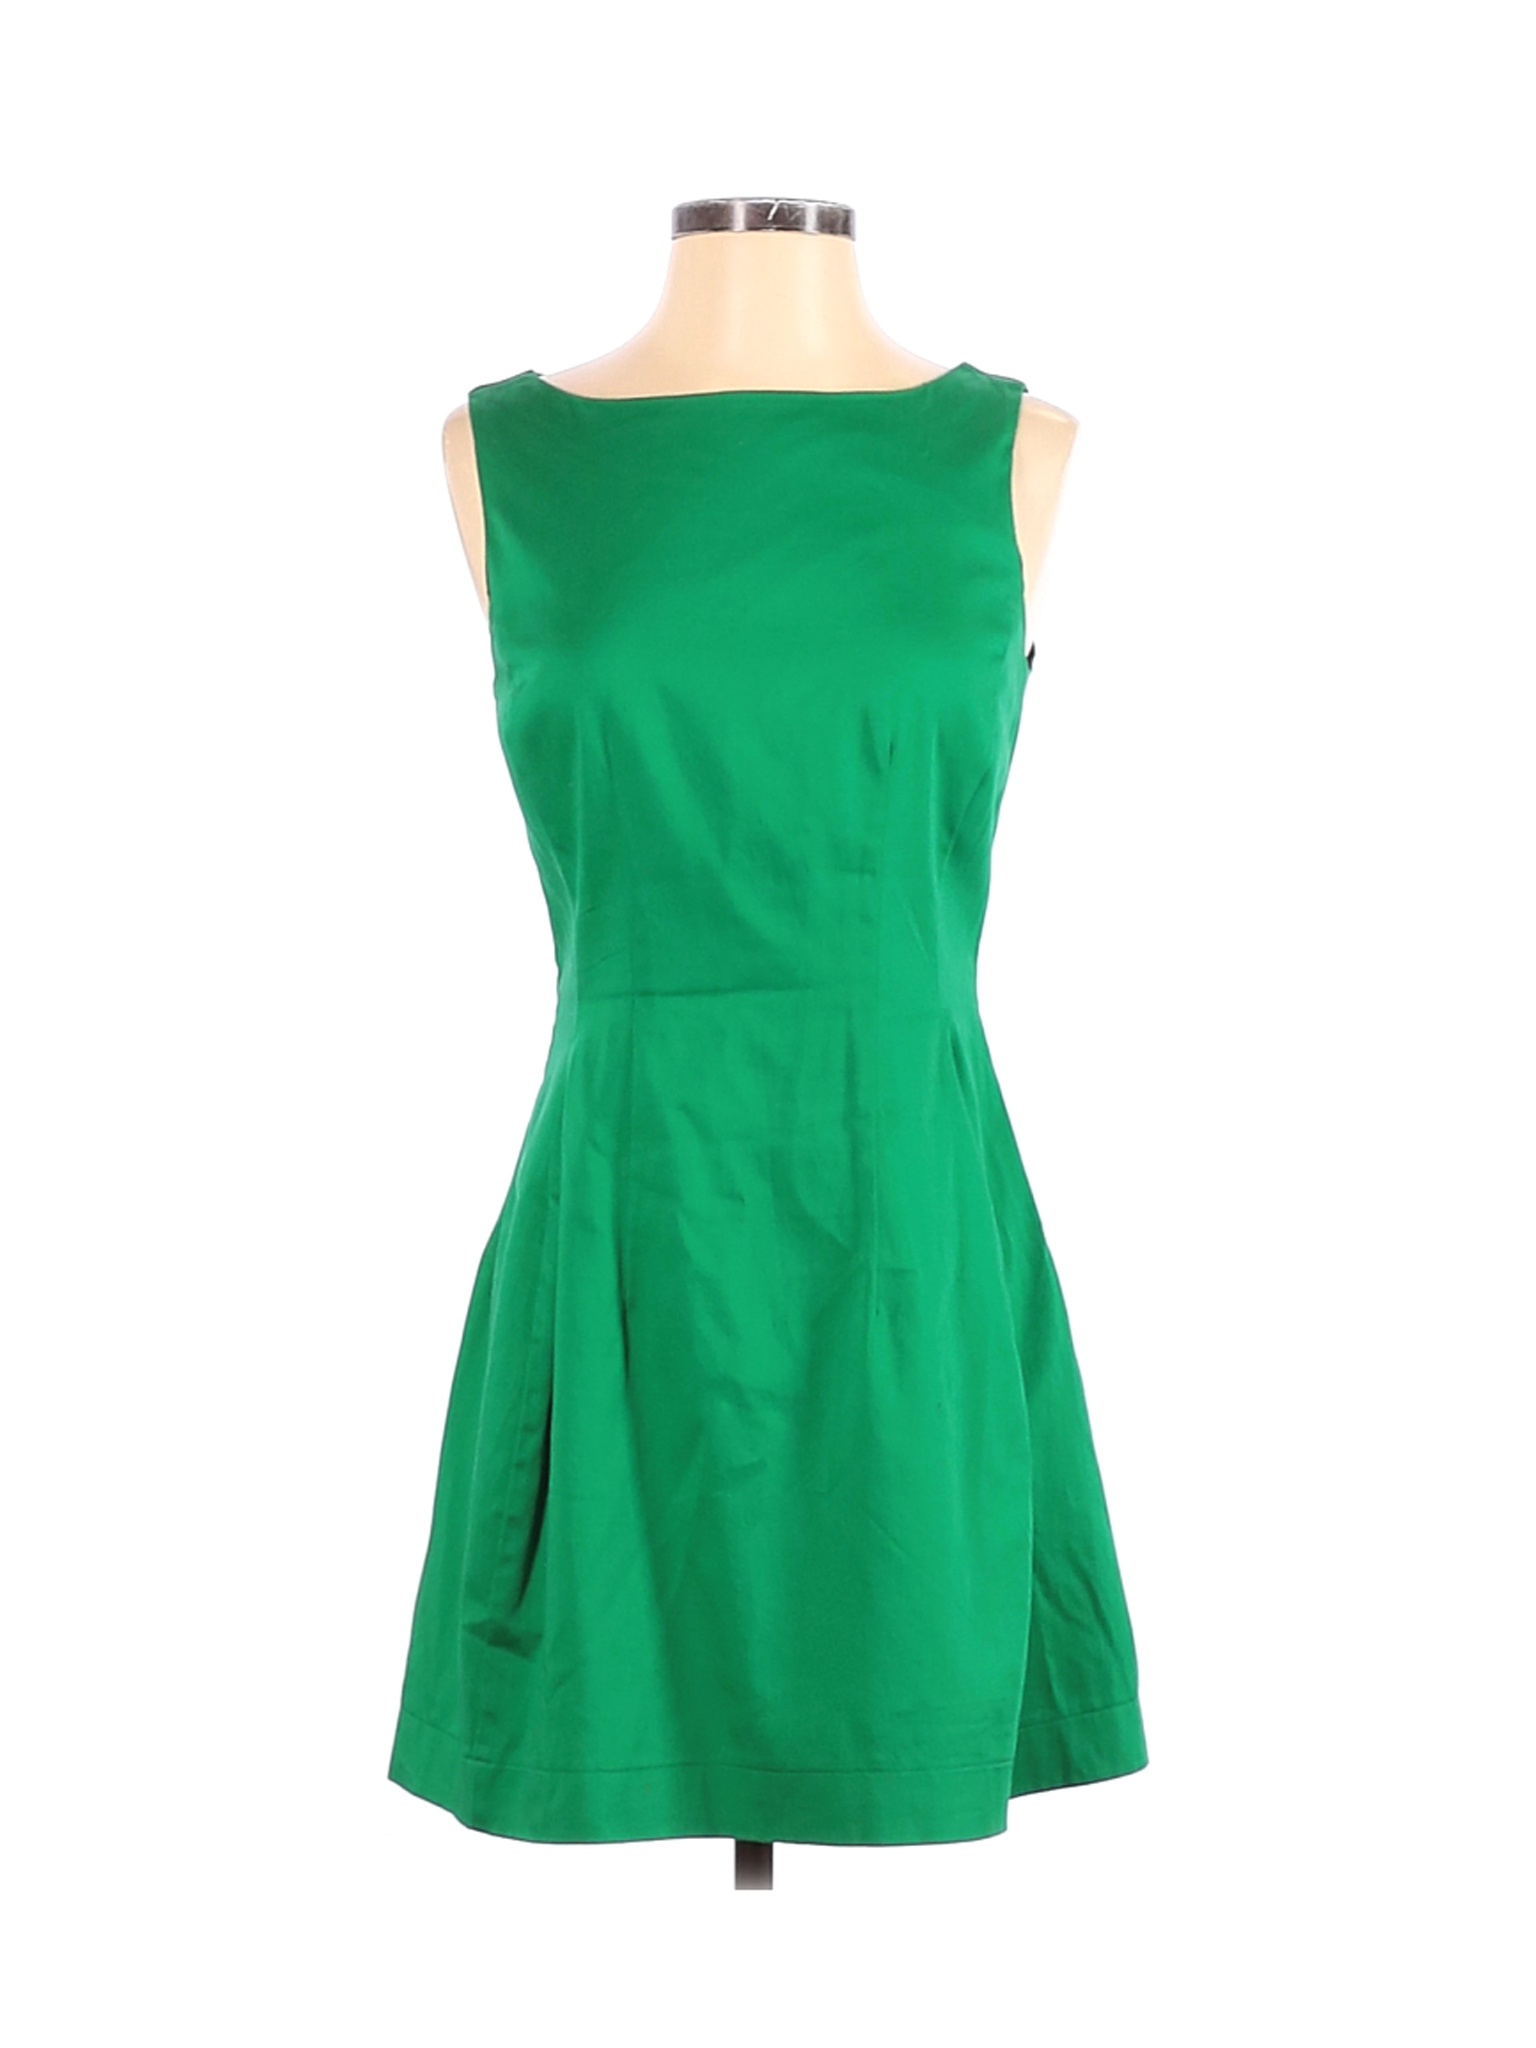 Monteau Women Green Casual Dress L | eBay